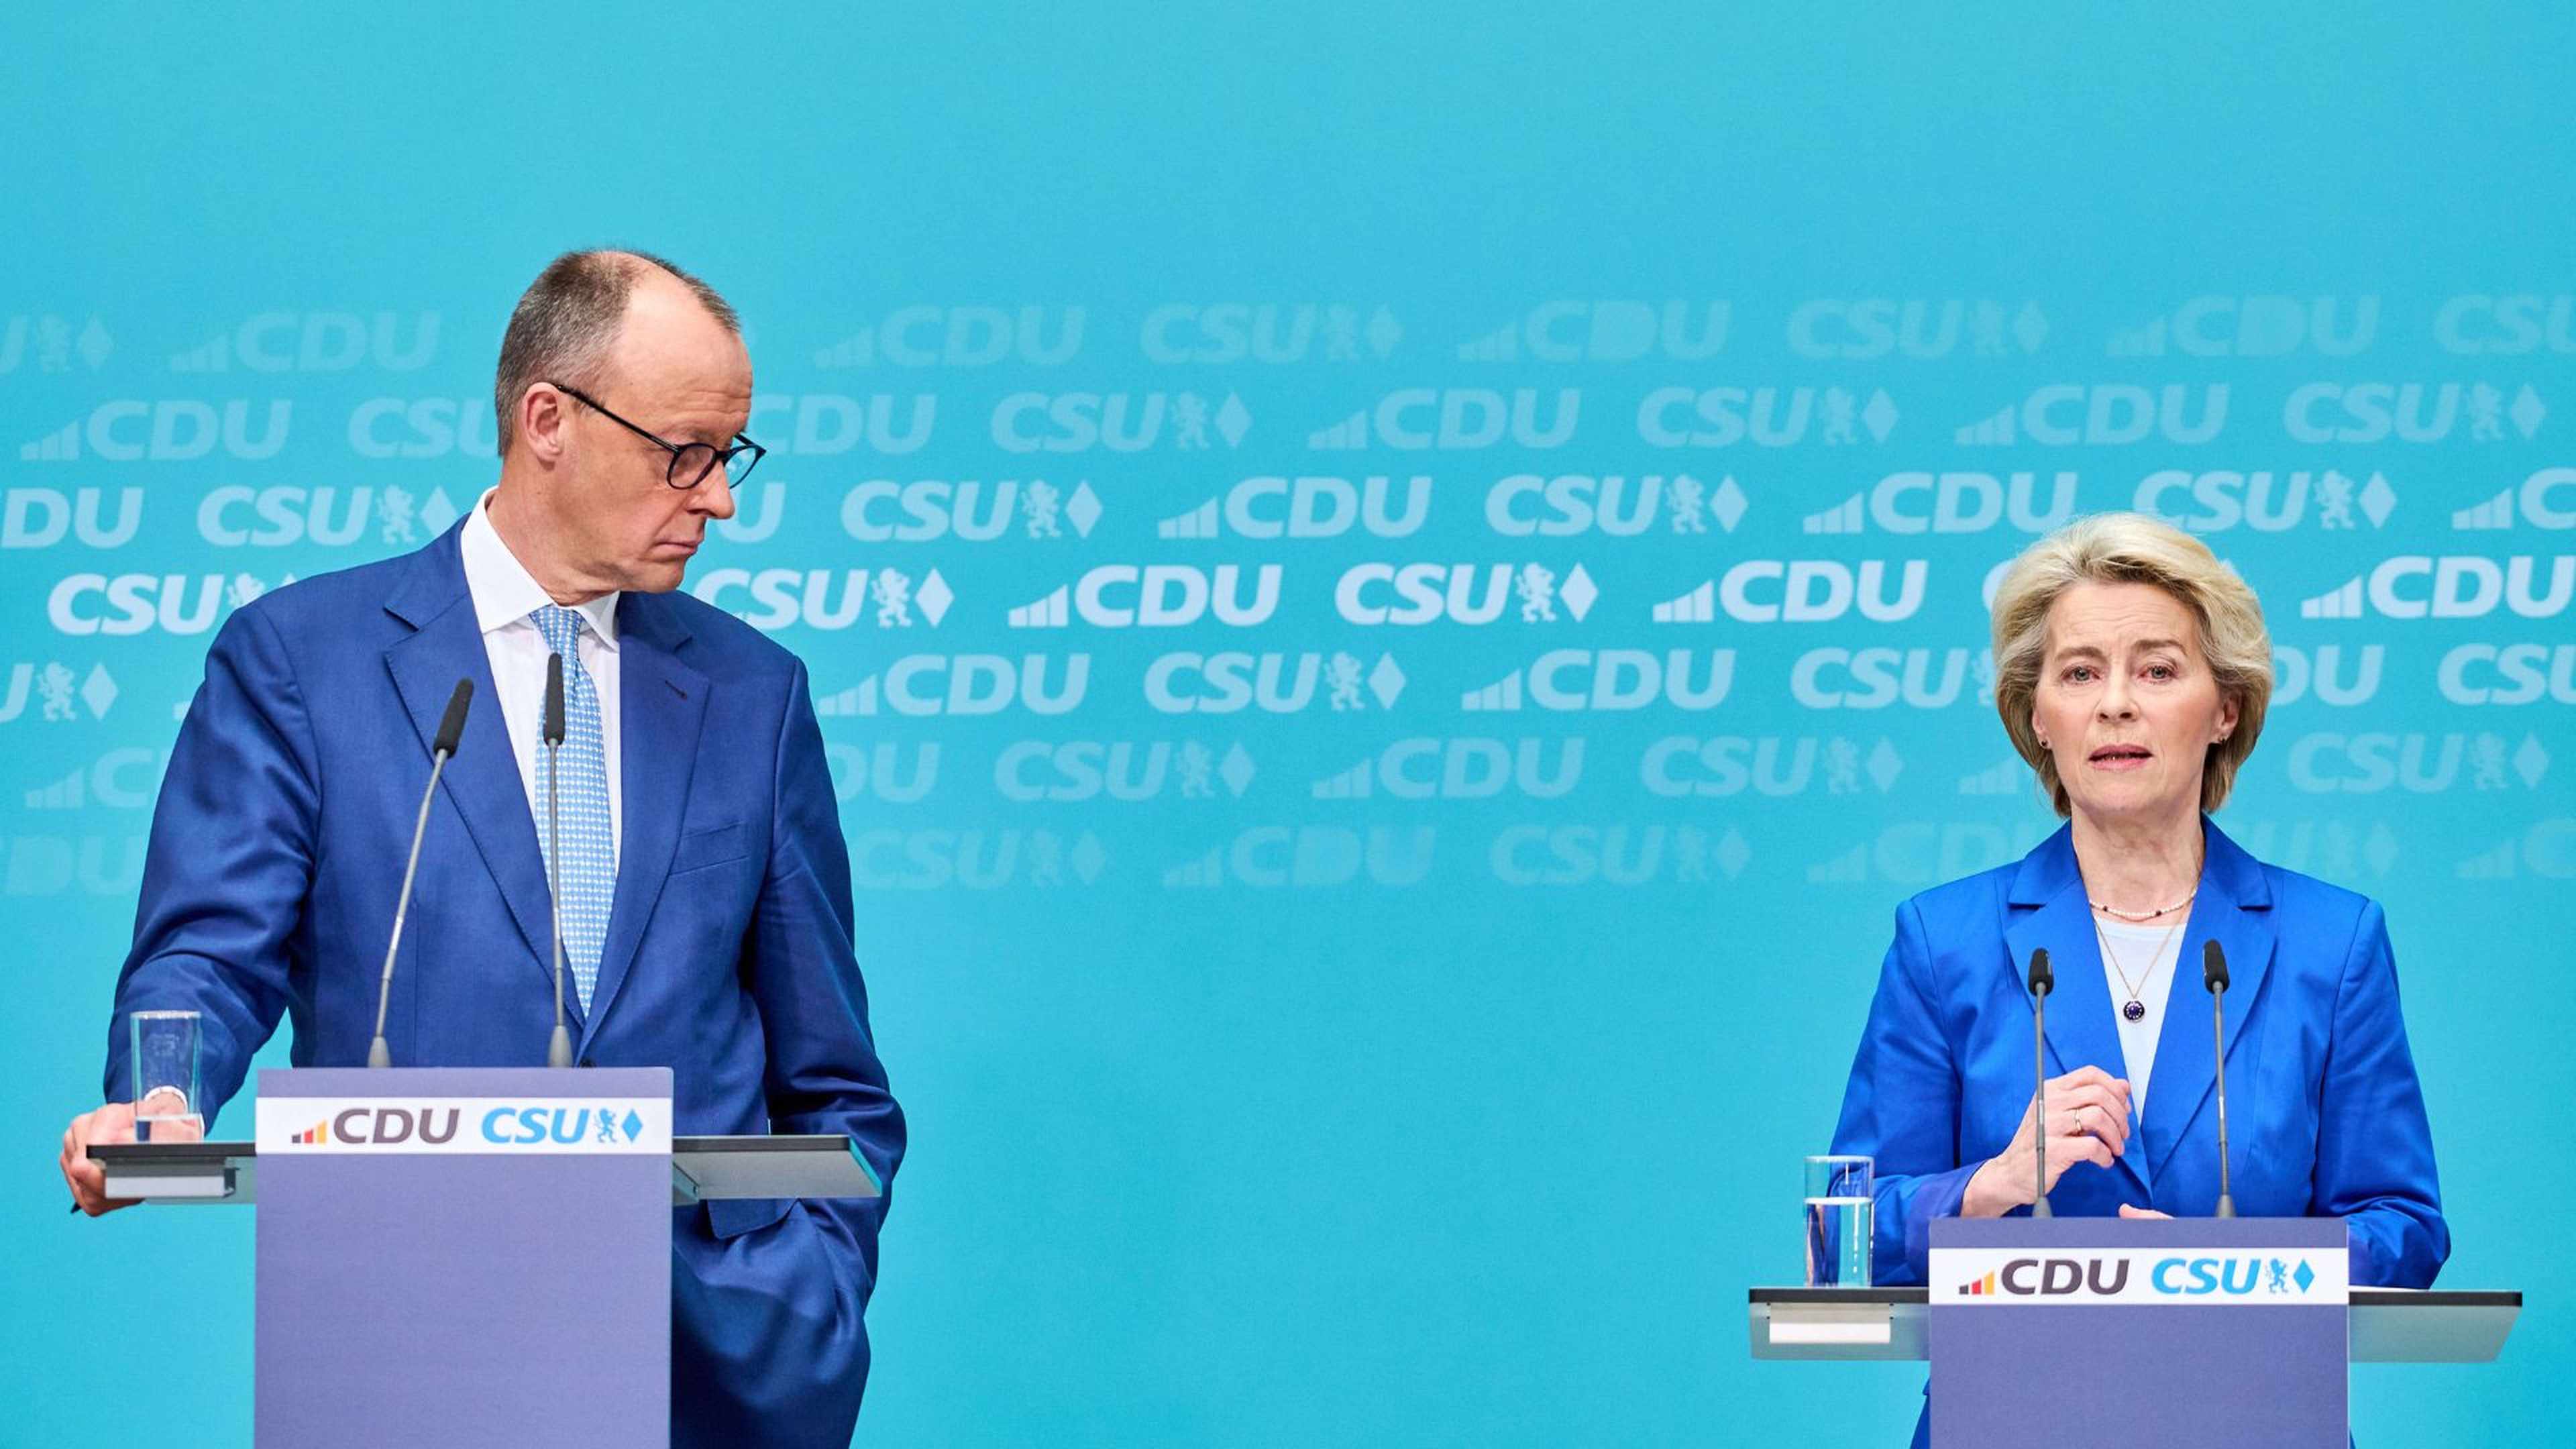 Friedrich-Merz-Ursula-von-der-leyen-CDU-CSU